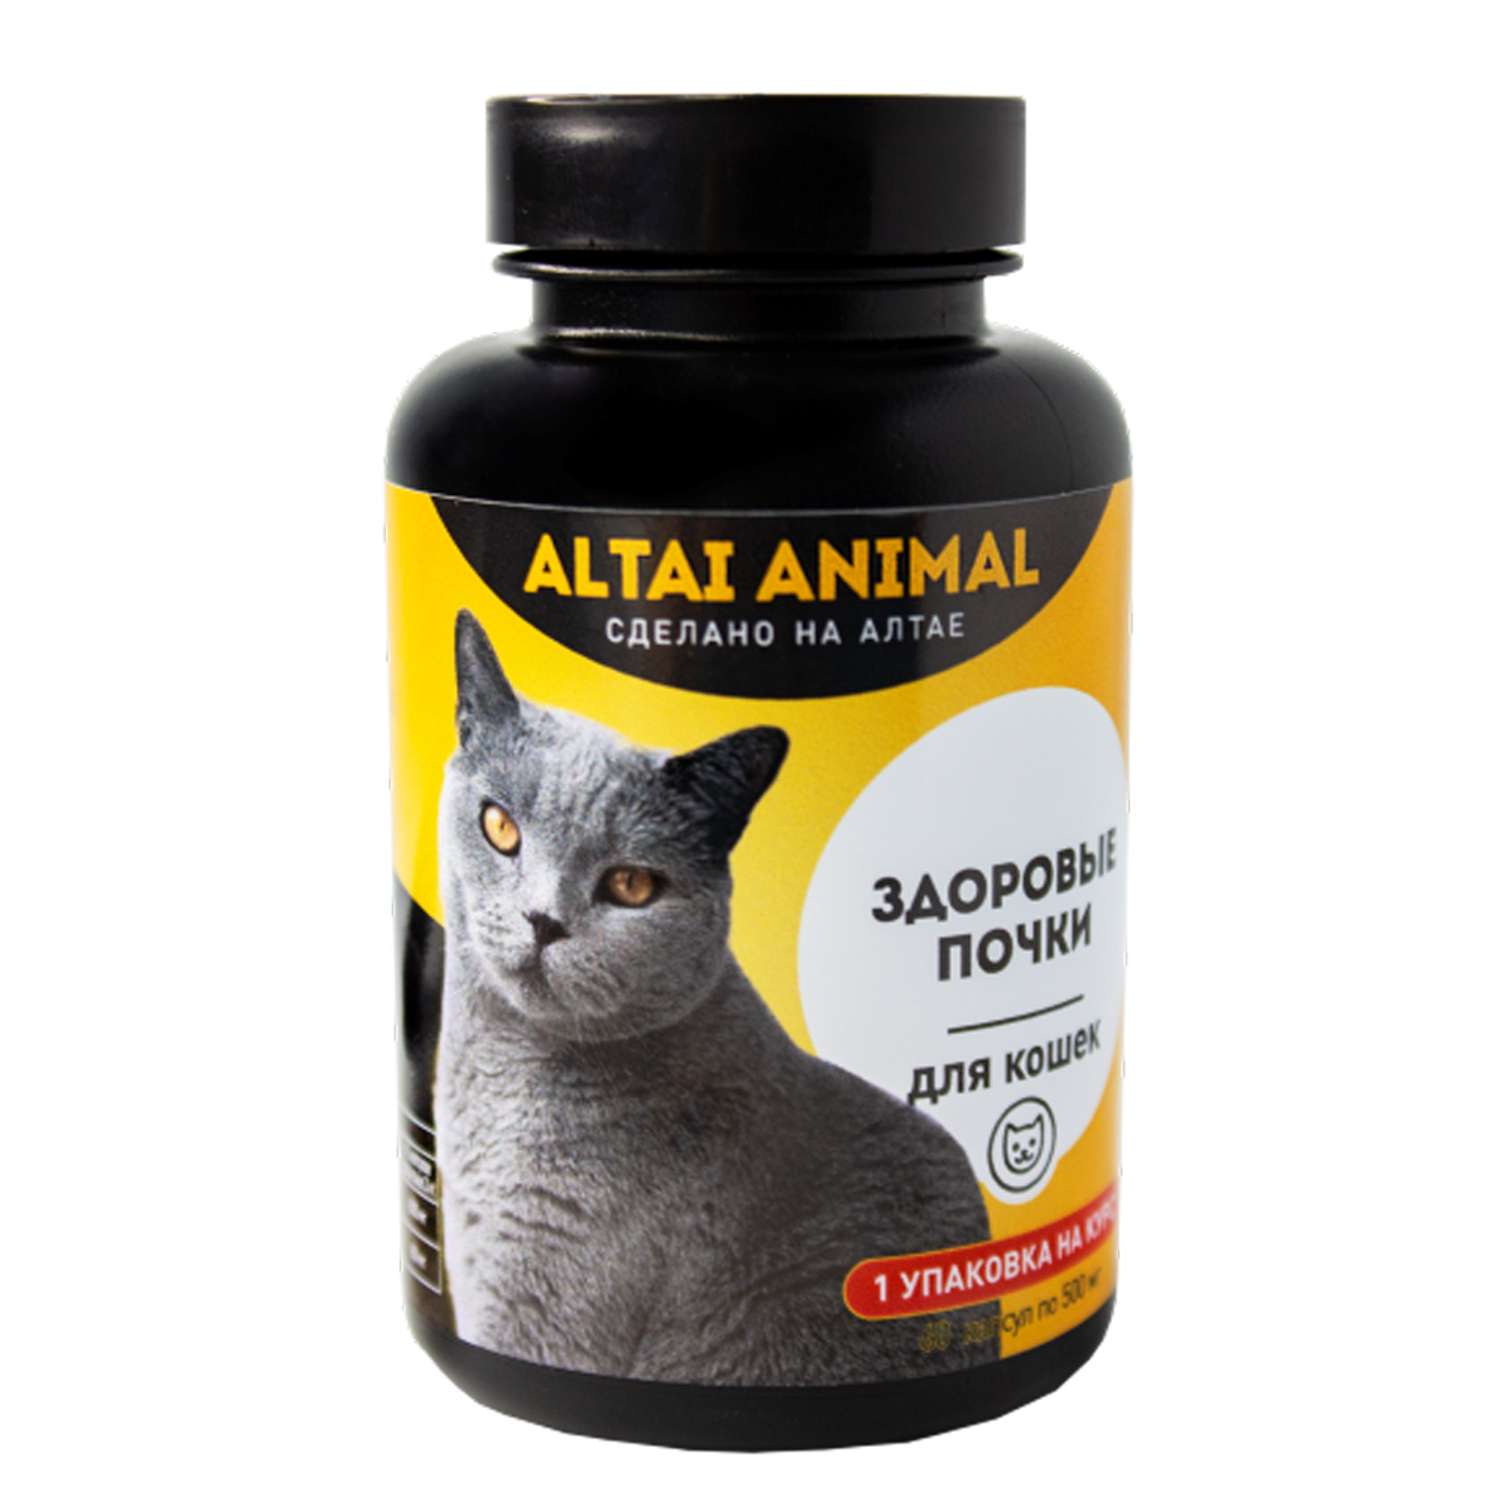 Витаминный комплекс ALTAI ANIMAL для кошек Здоровые почки - фото 1